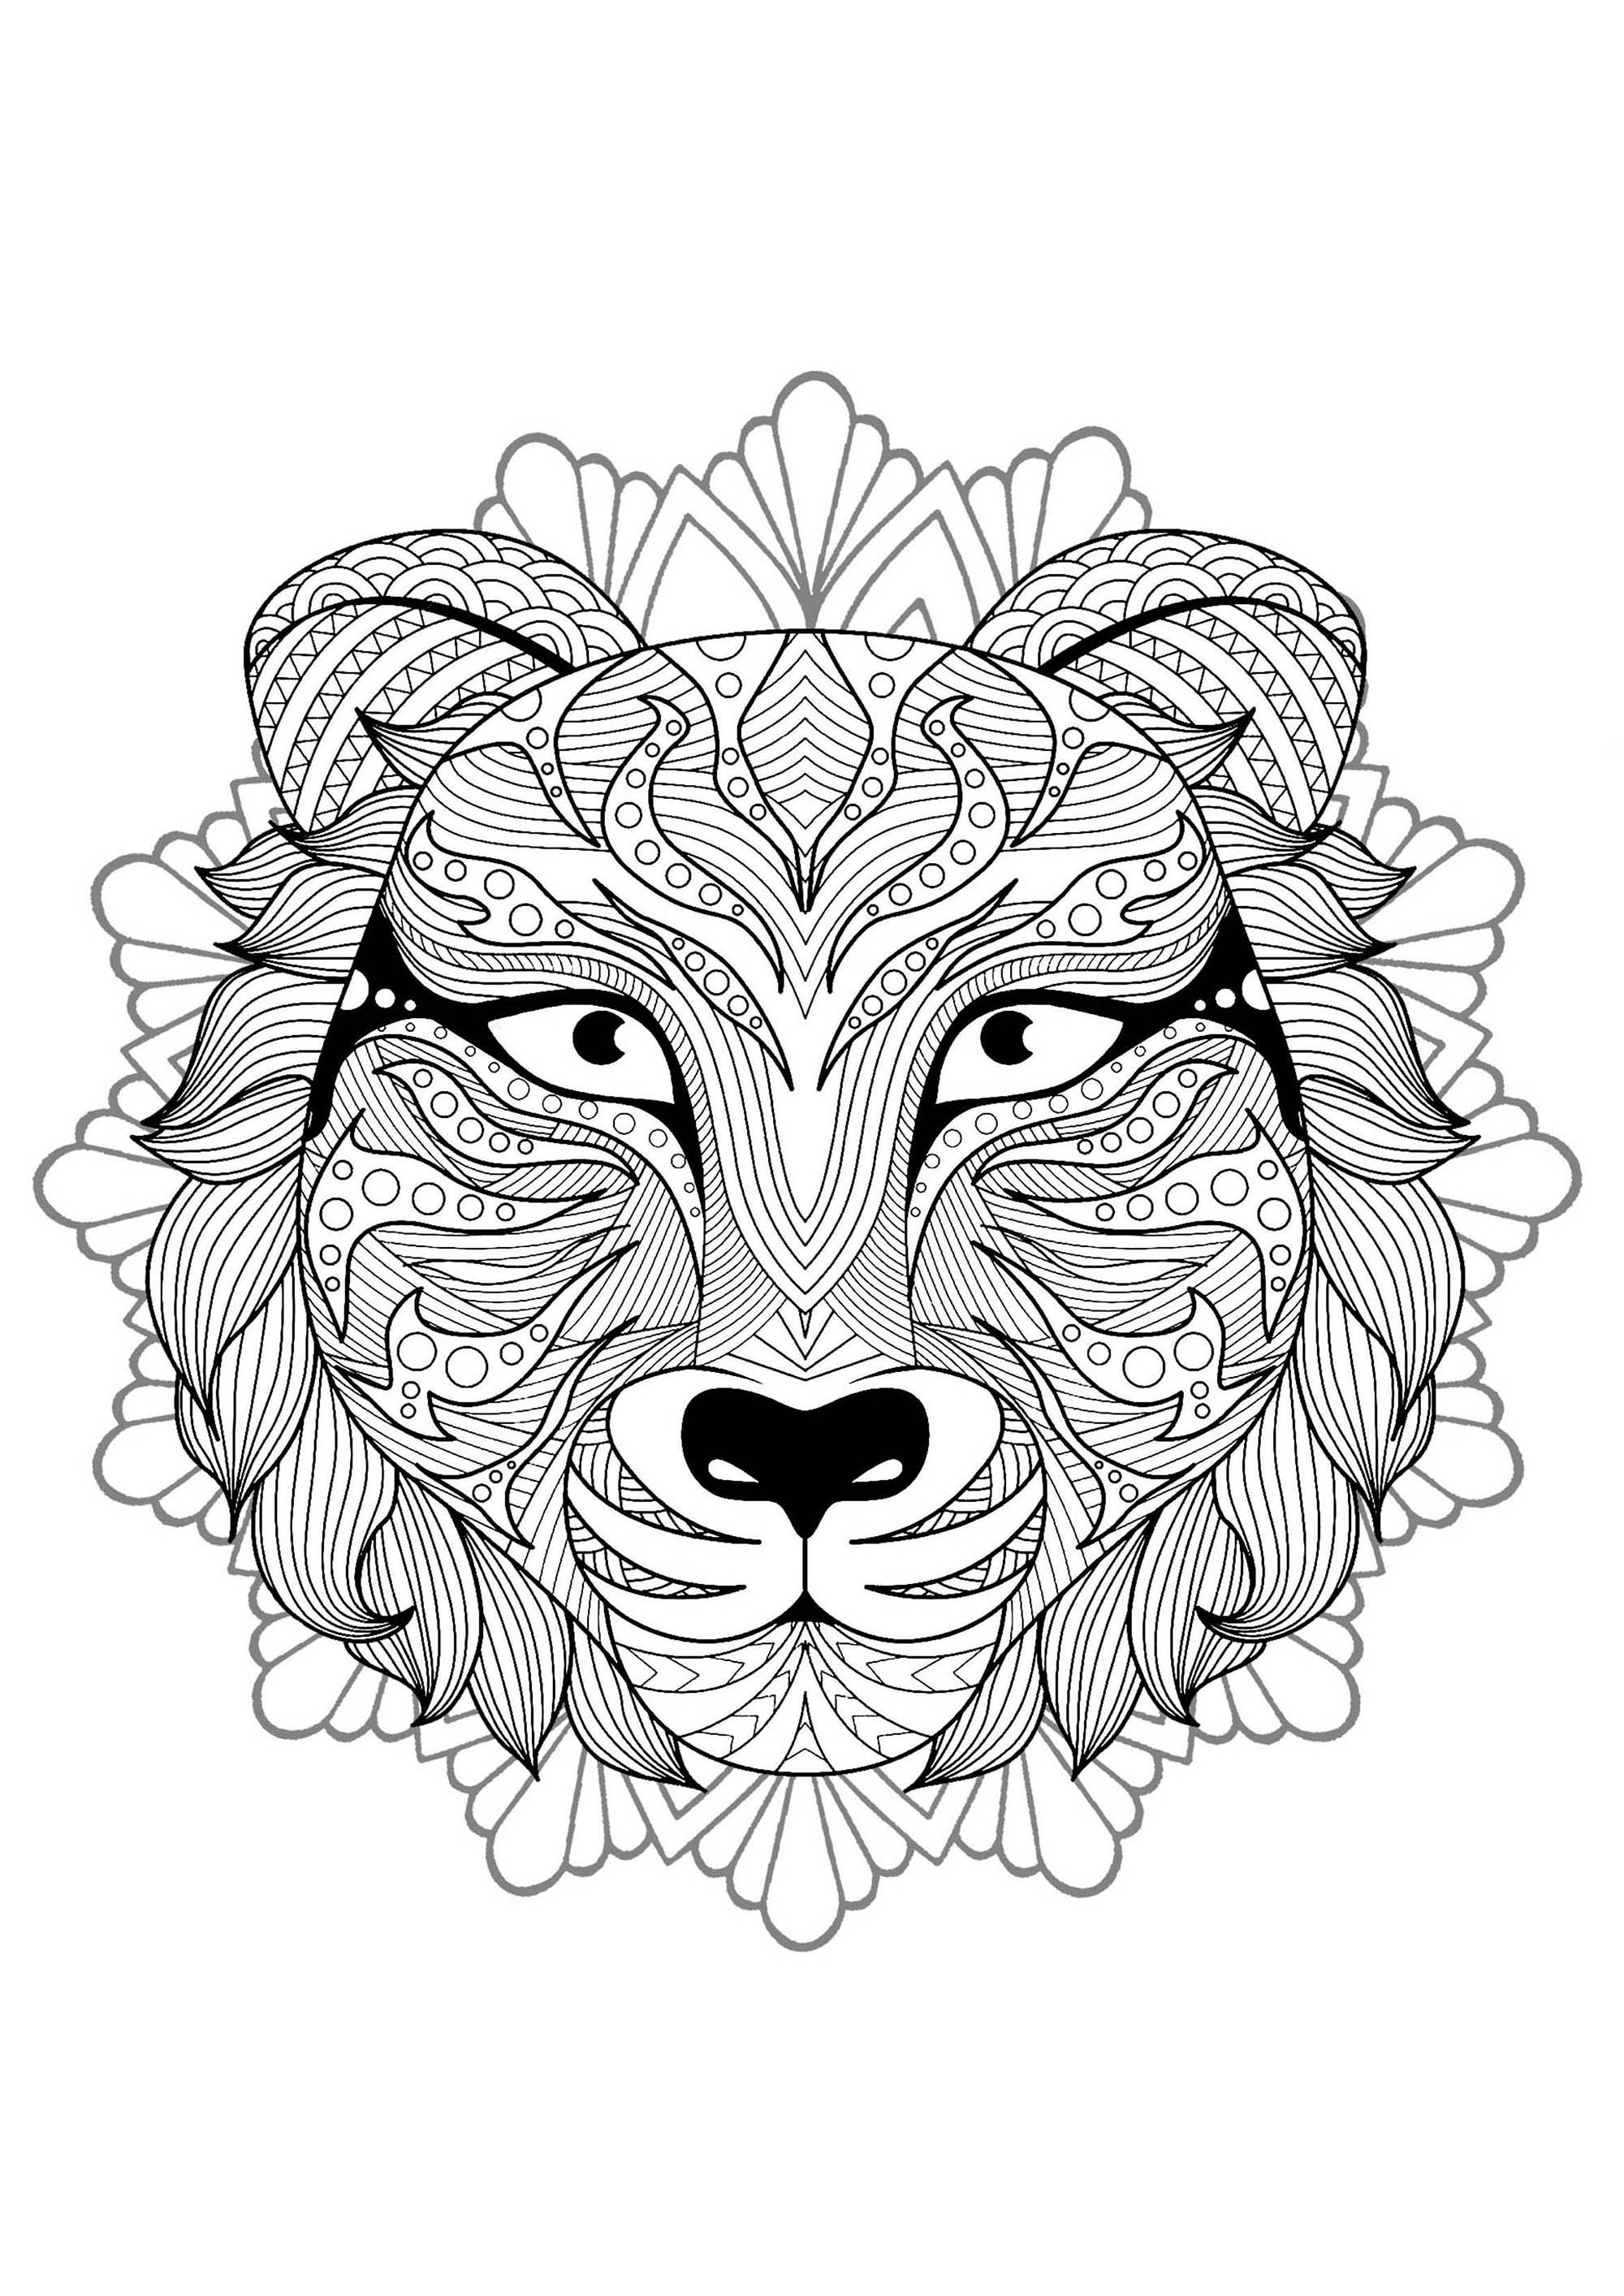 Mandala zum Ausmalen mit prächtigem Tigerkopf und floralen / runden Mustern im Hintergrund